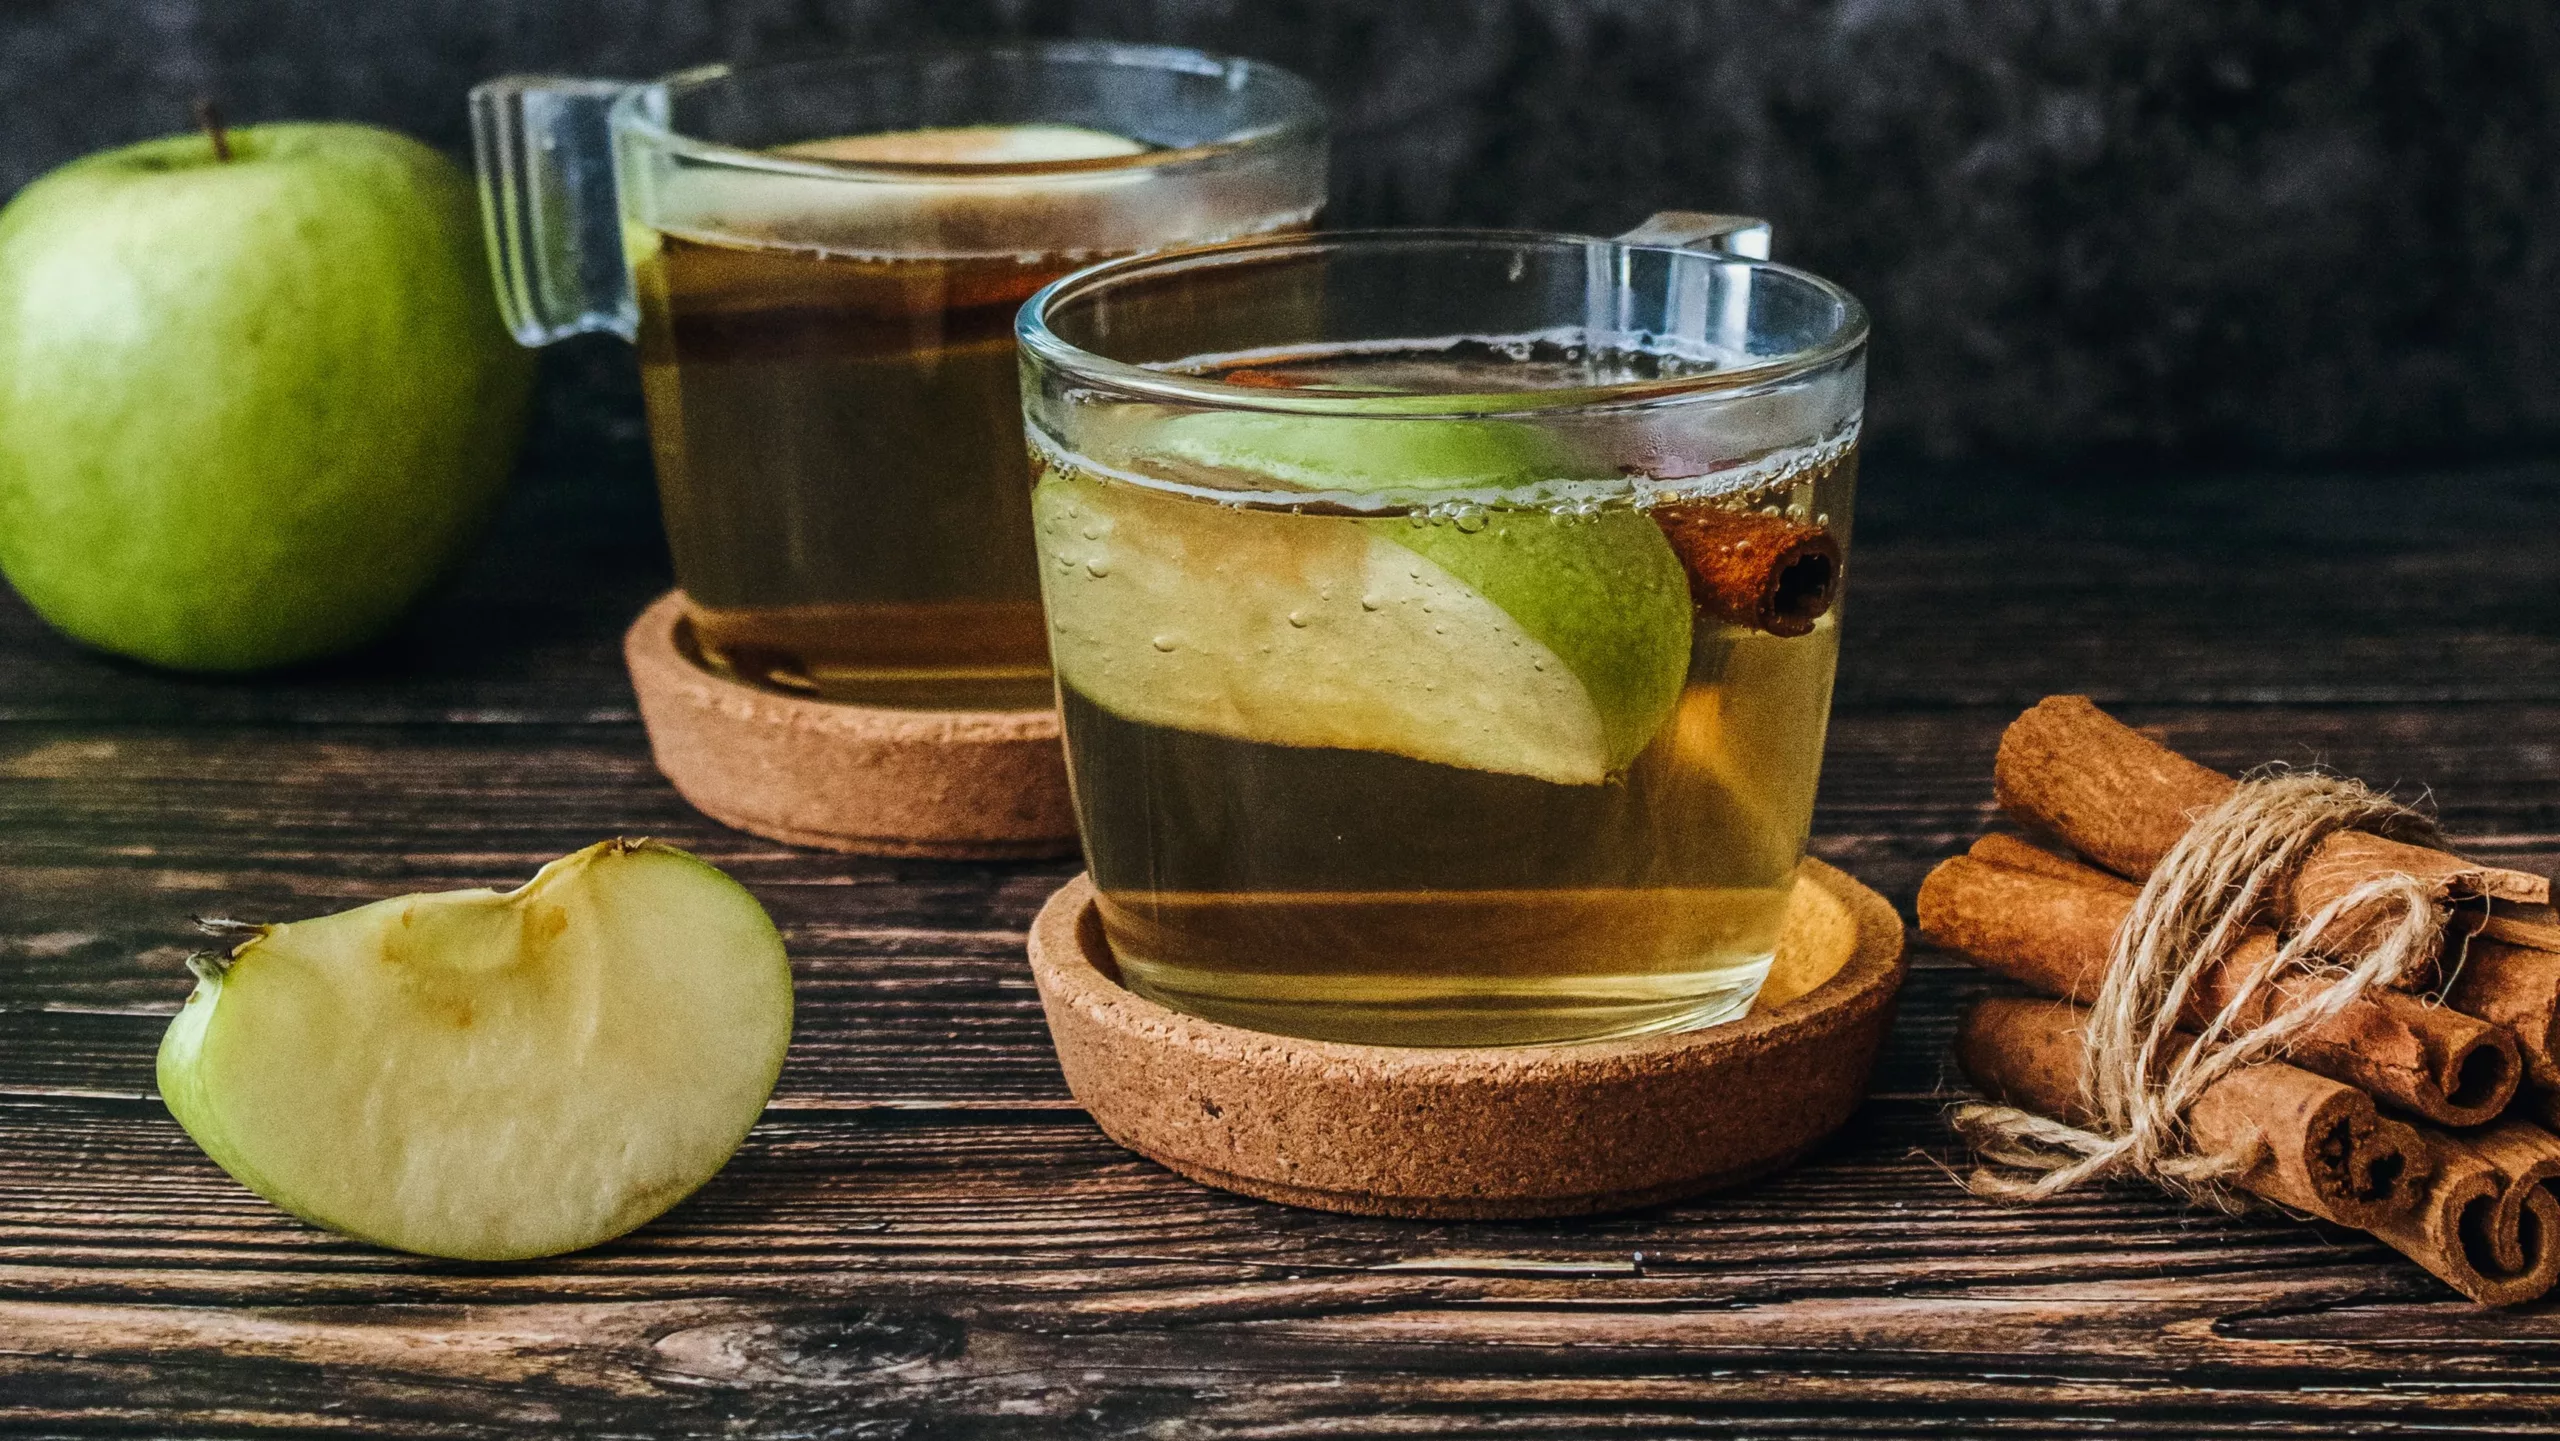 DIY apple cider vinegar feminine rinse recipe